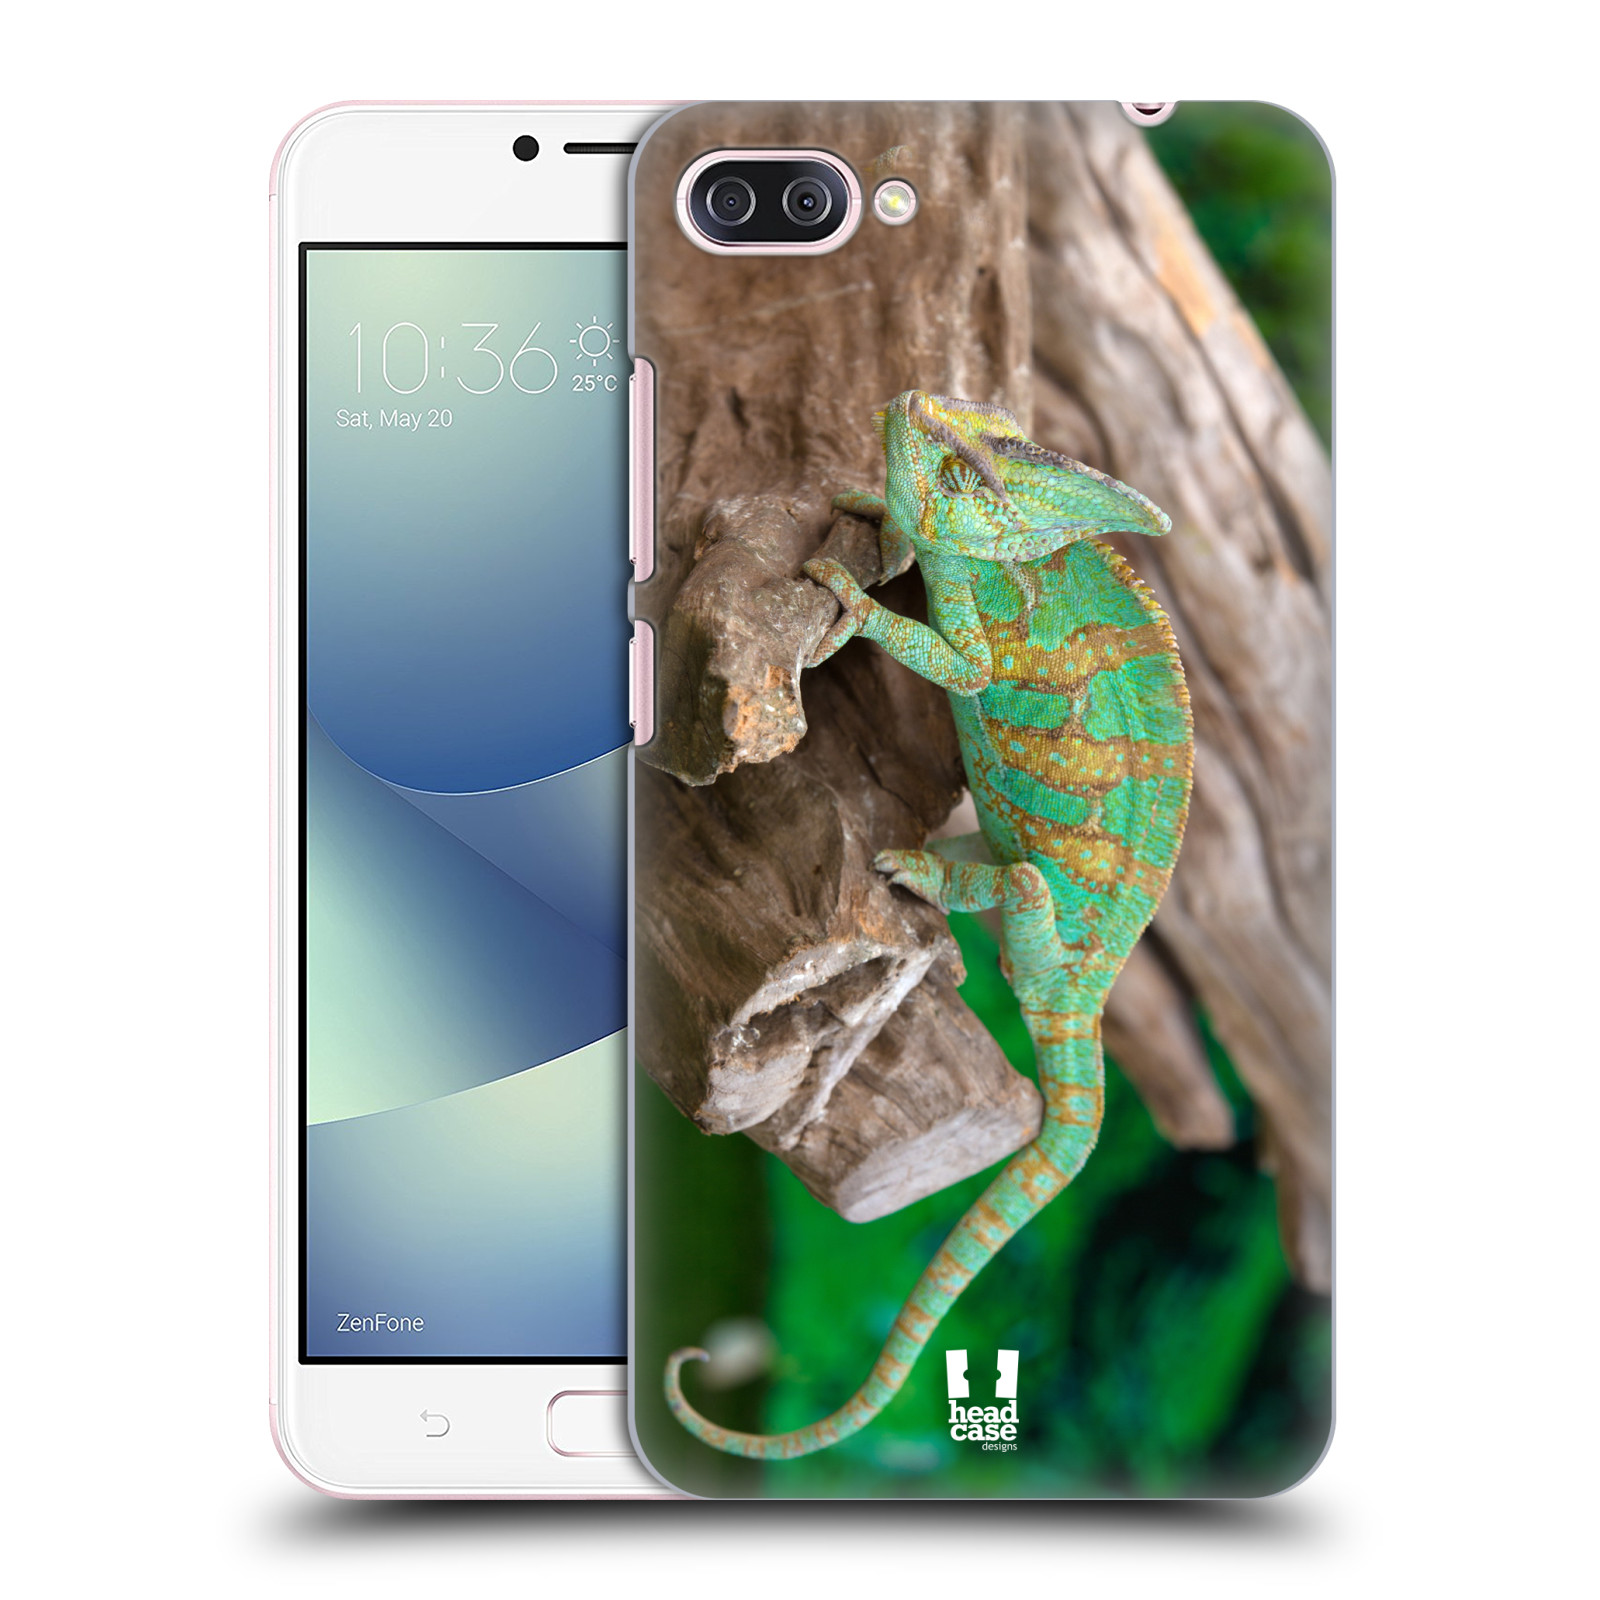 HEAD CASE plastový obal na mobil Asus Zenfone 4 MAX ZC554KL vzor slavná zvířata foto chameleon